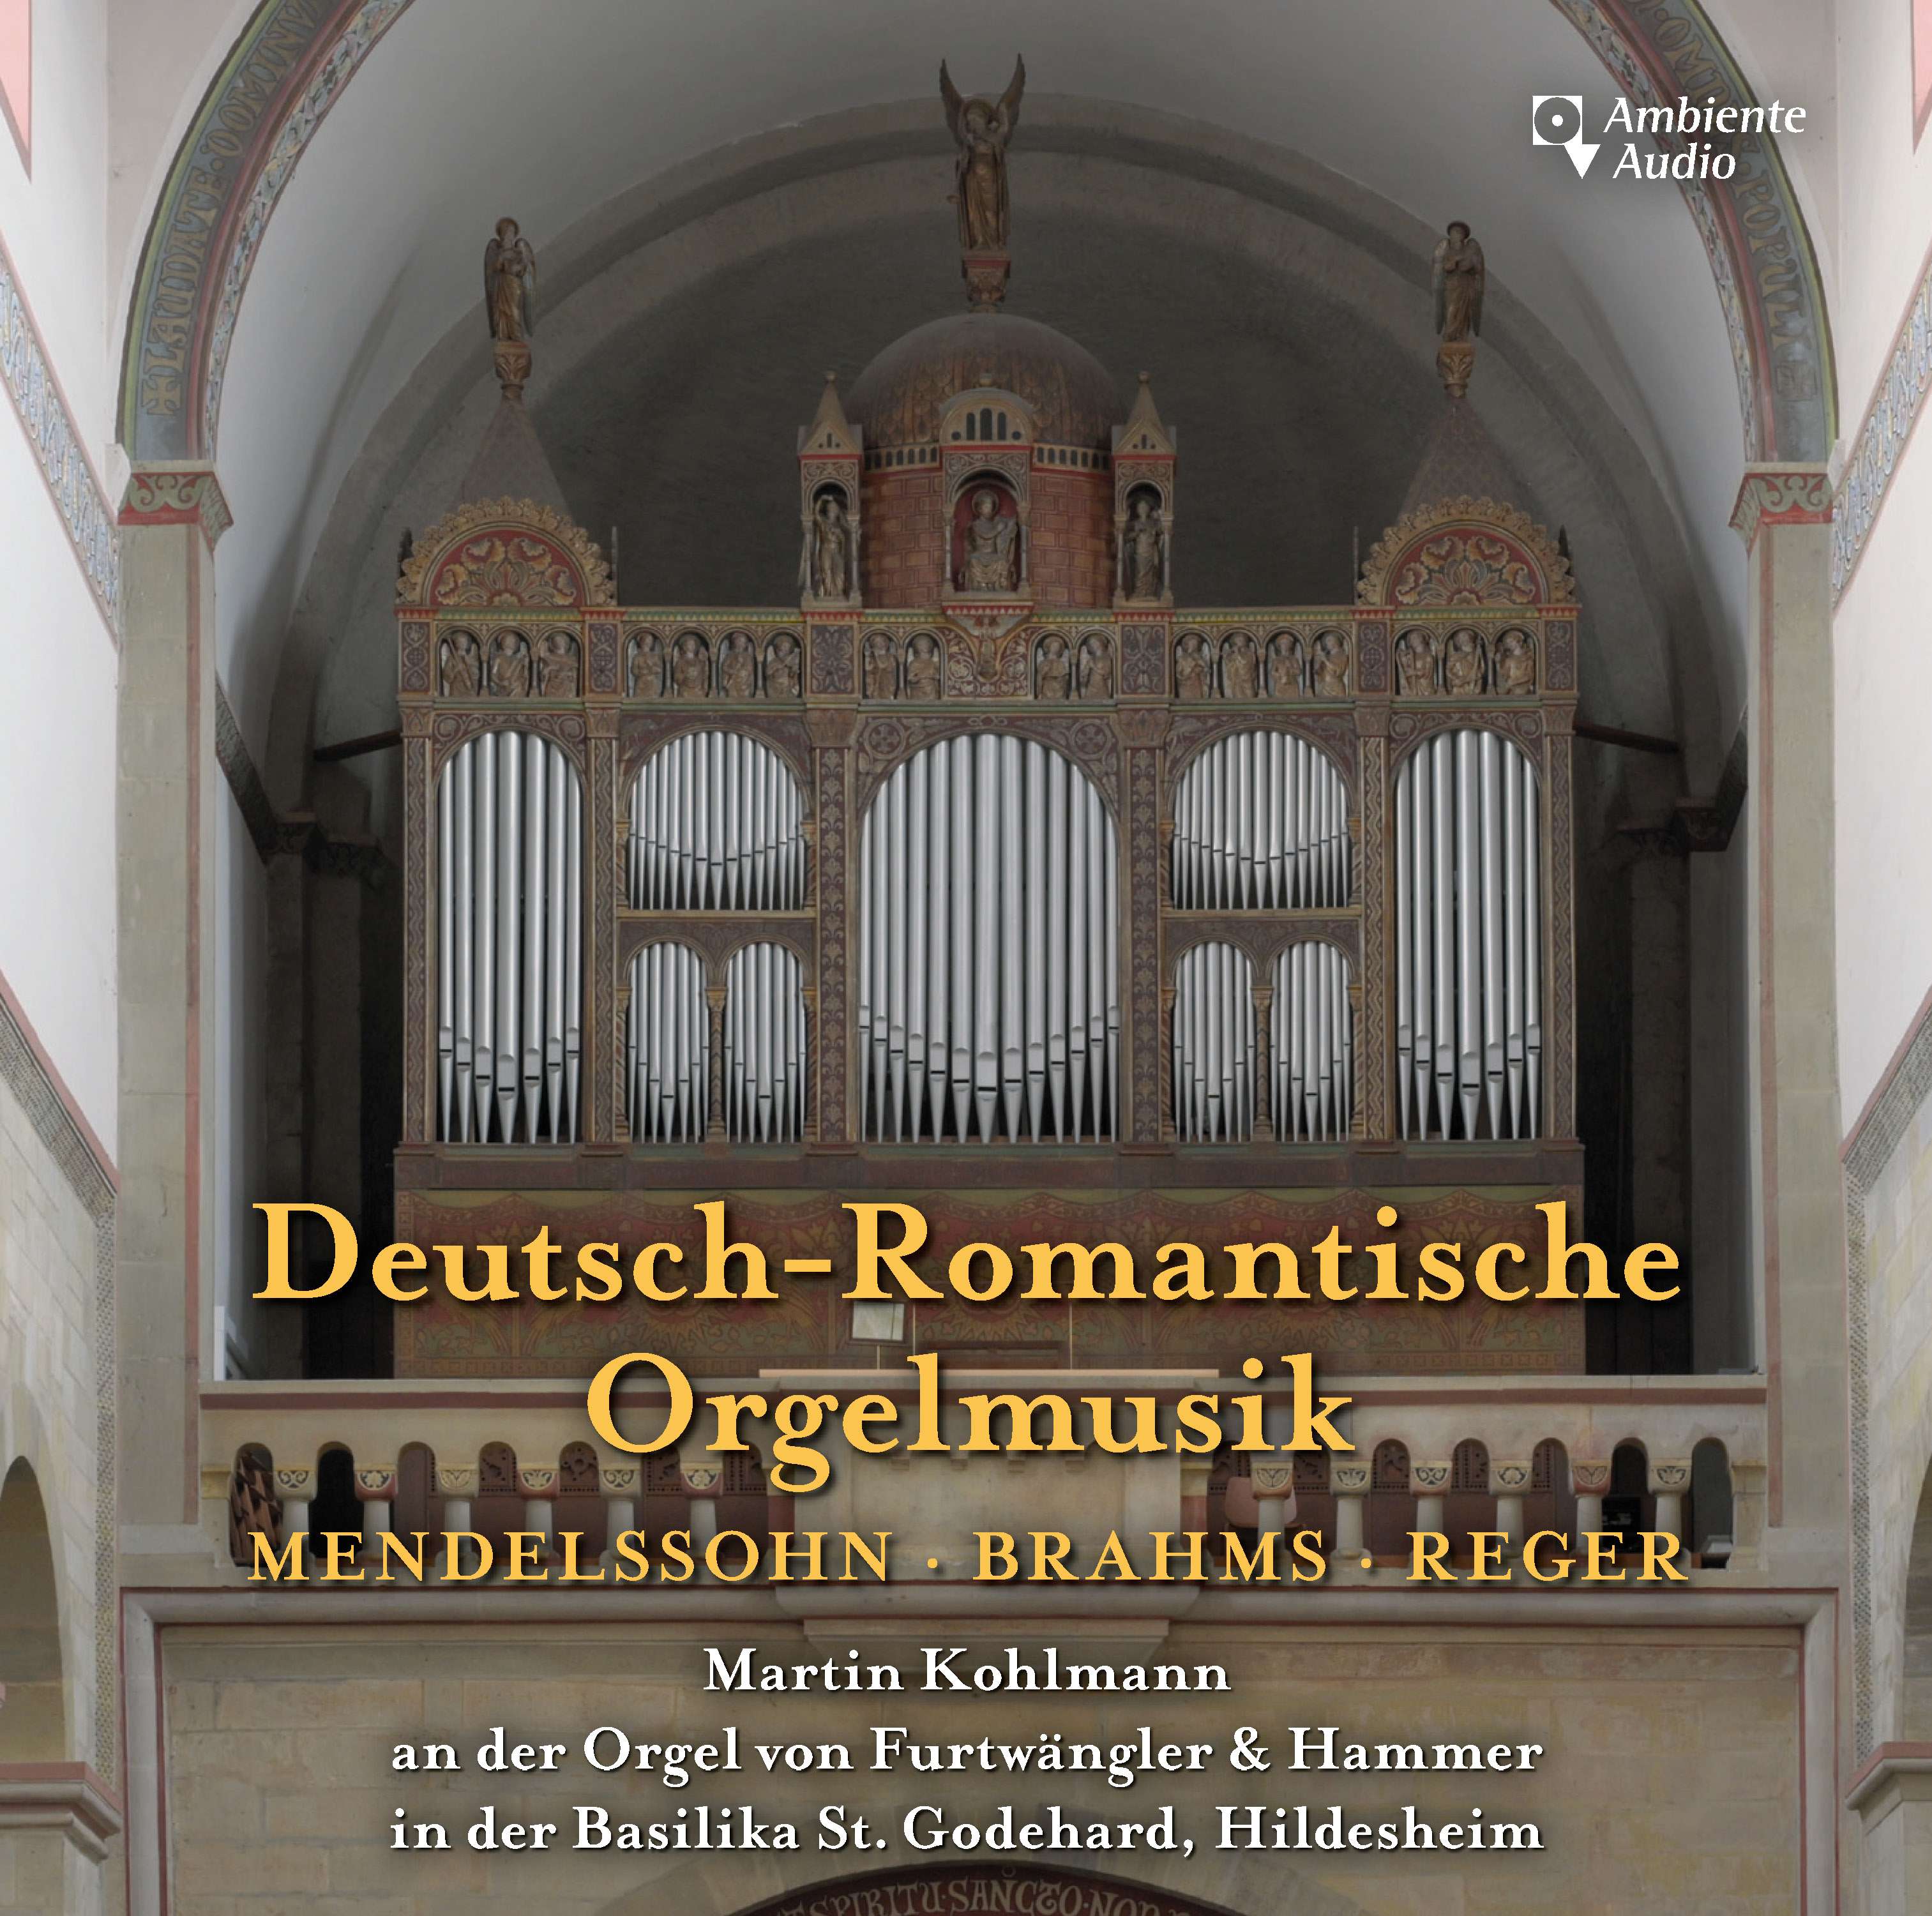 Martin Kohlmann - Deutsch-Romantische Orgelmusik